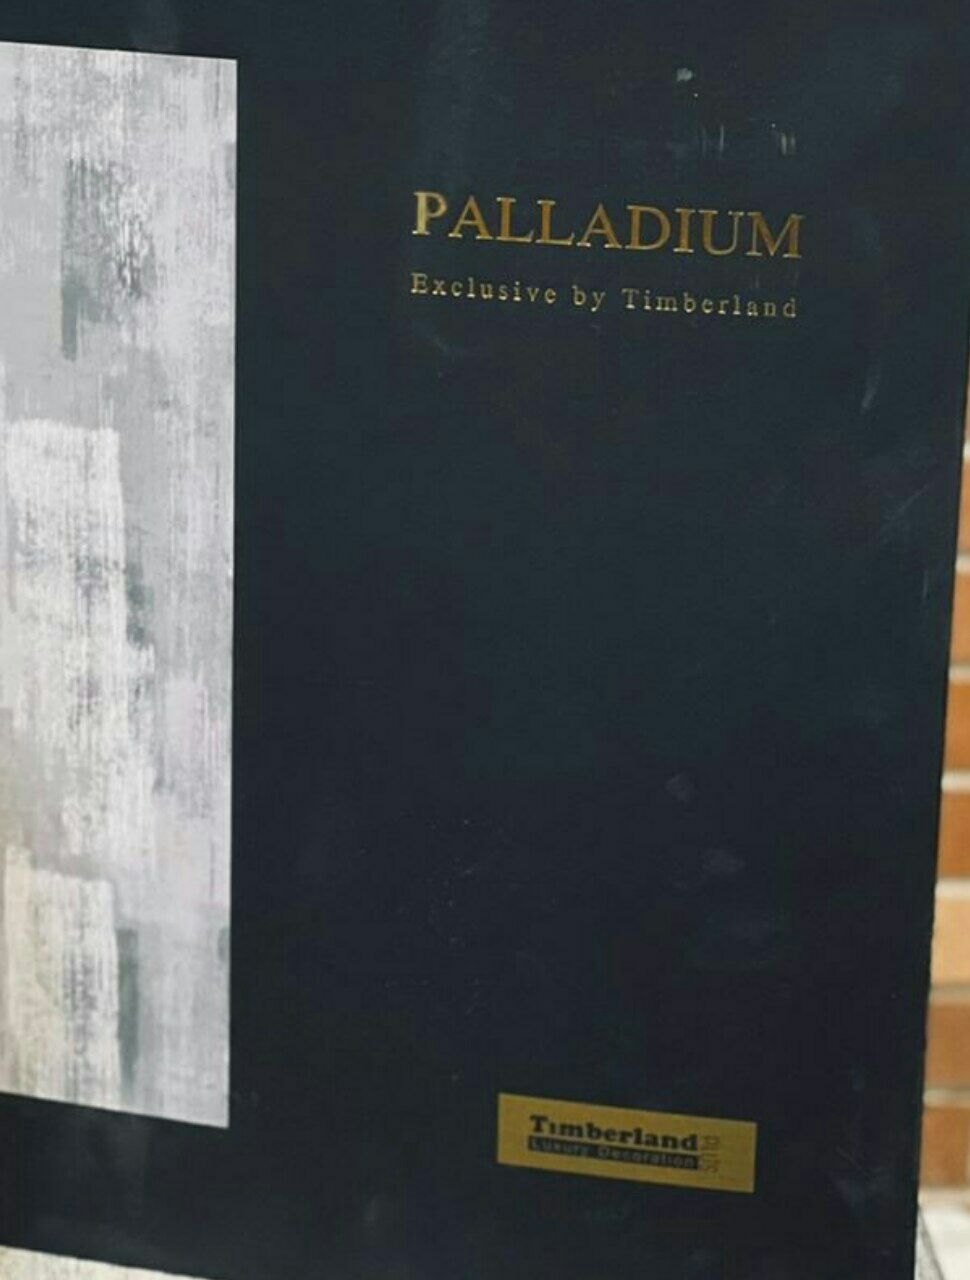 کاغذدیواری پالادیوم palladium